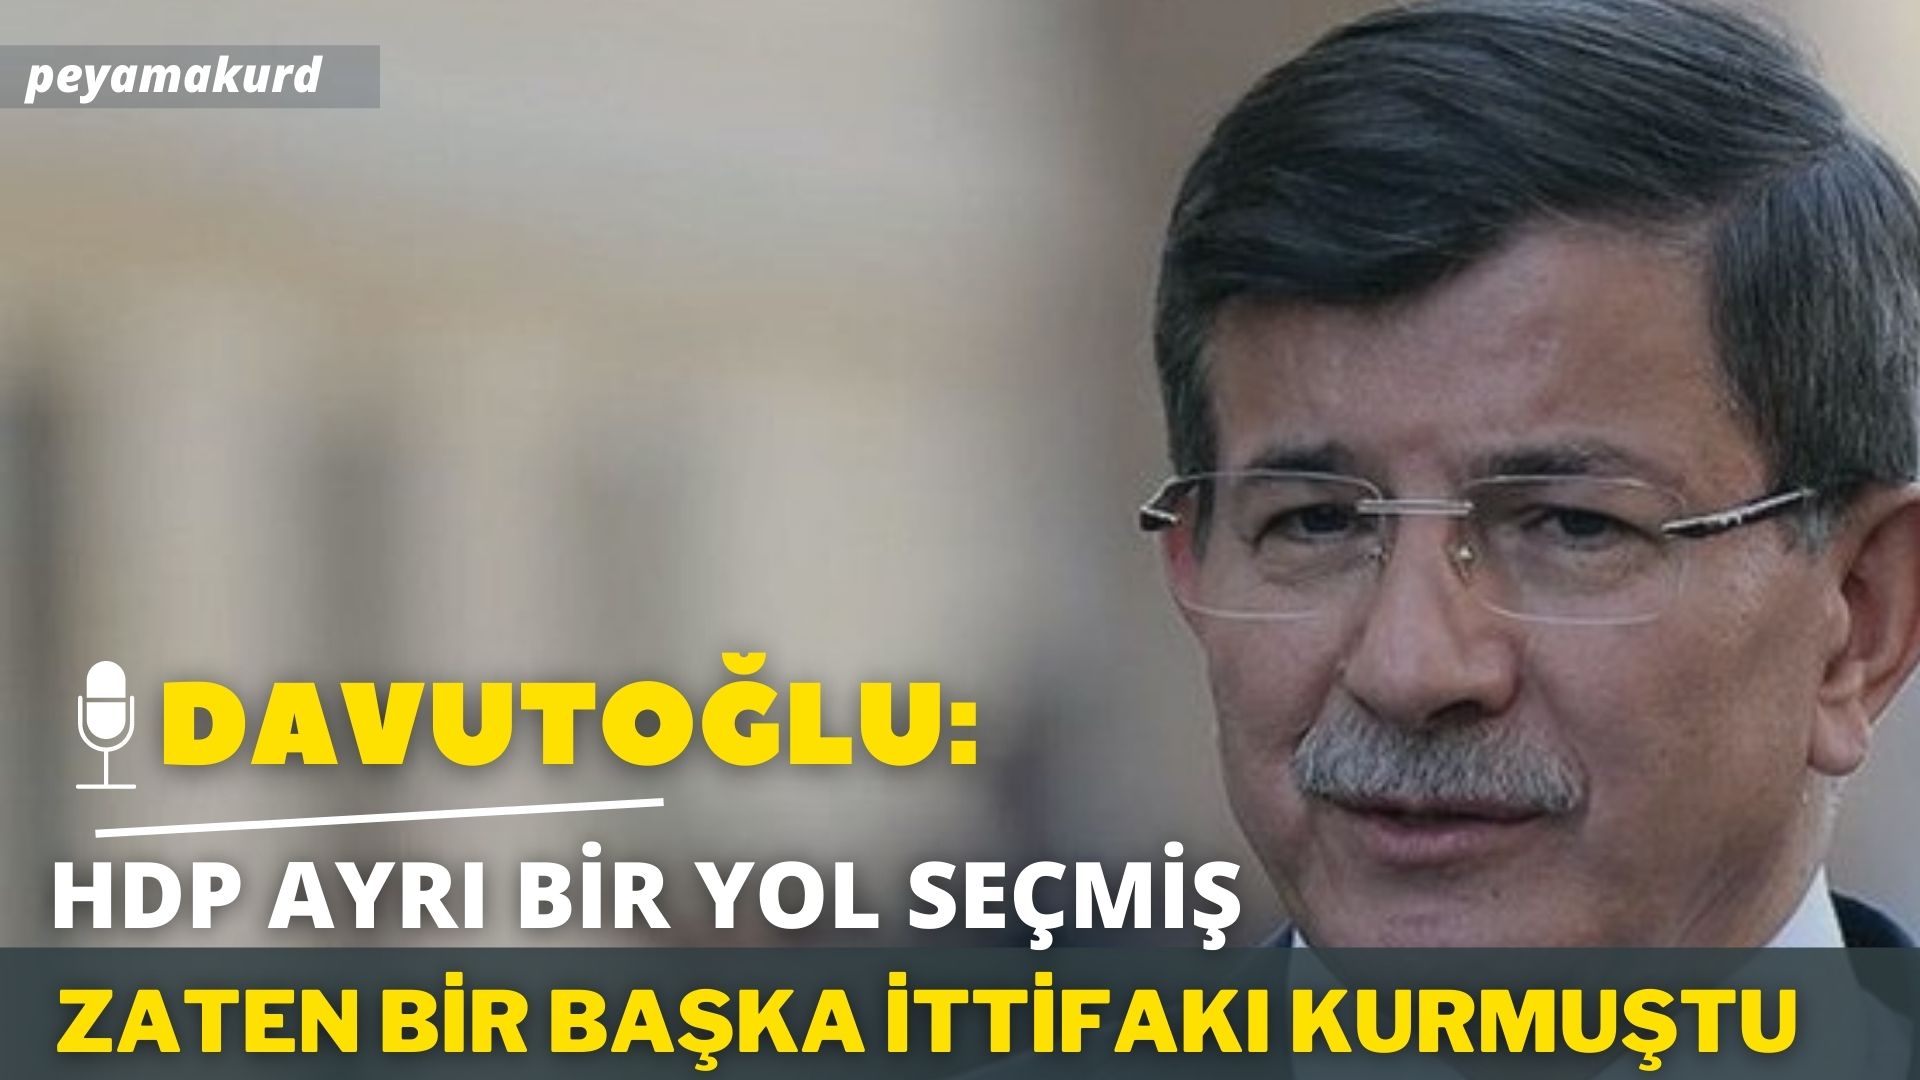 RÖPORTAJ | Davutoğlu 2015 seçimleri için 'İnsan içine çıkamazlar' dediği isimleri açıkladı!